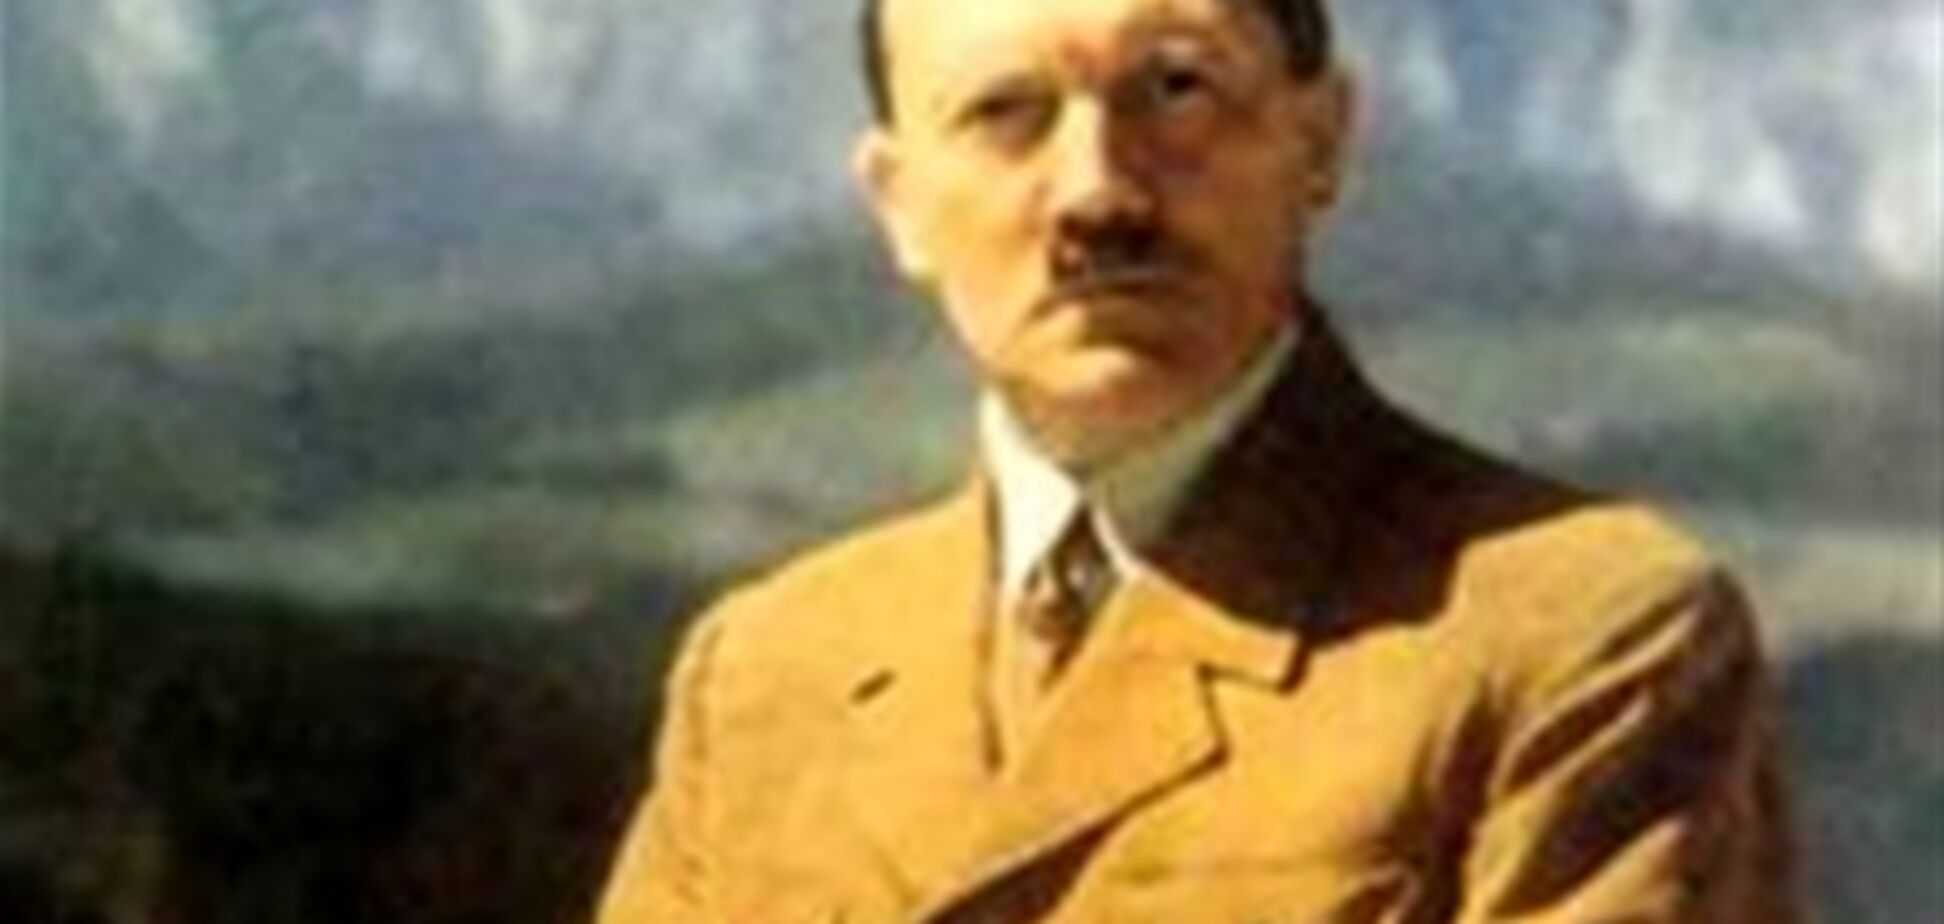 ЗМІ: наприкінці війни живий Гітлер вважався 'корисним' через його помилок